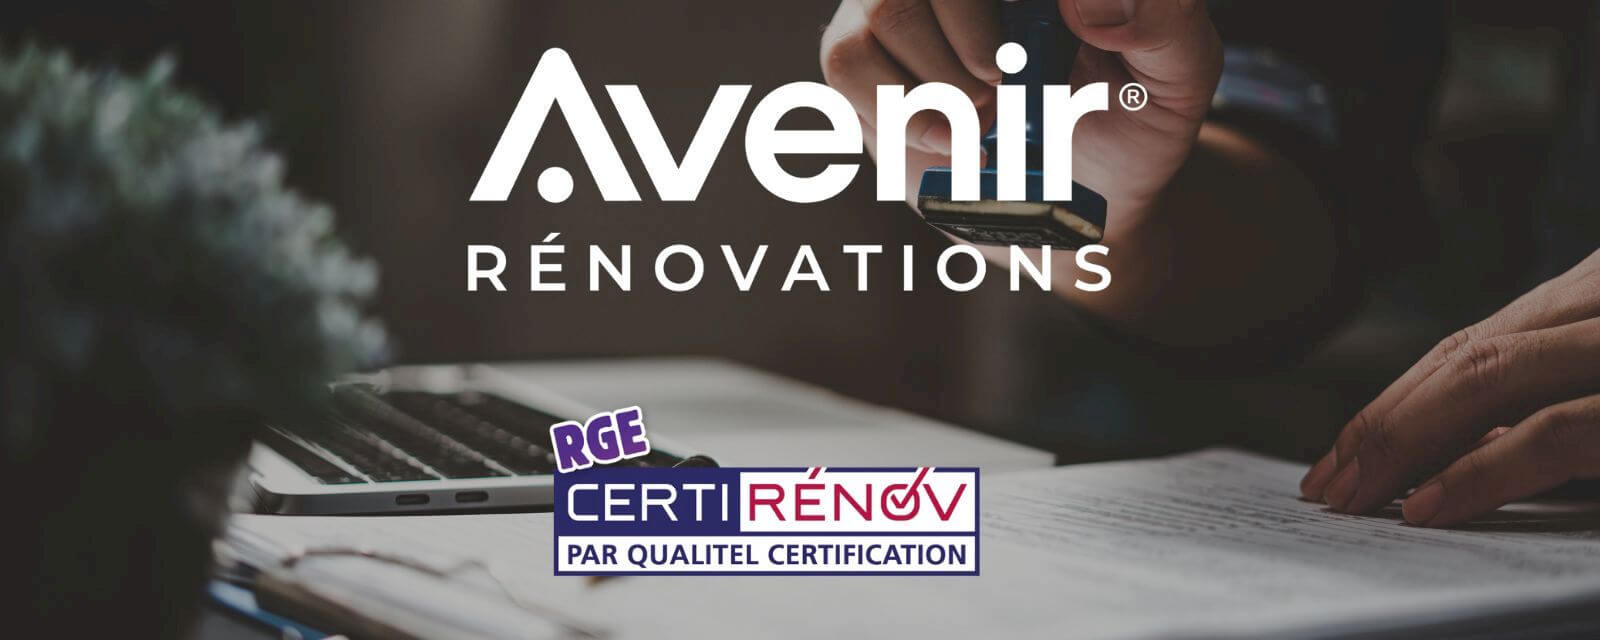 Transition vers CertiRénov : Avenir Rénovations adopte la nouvelle certification